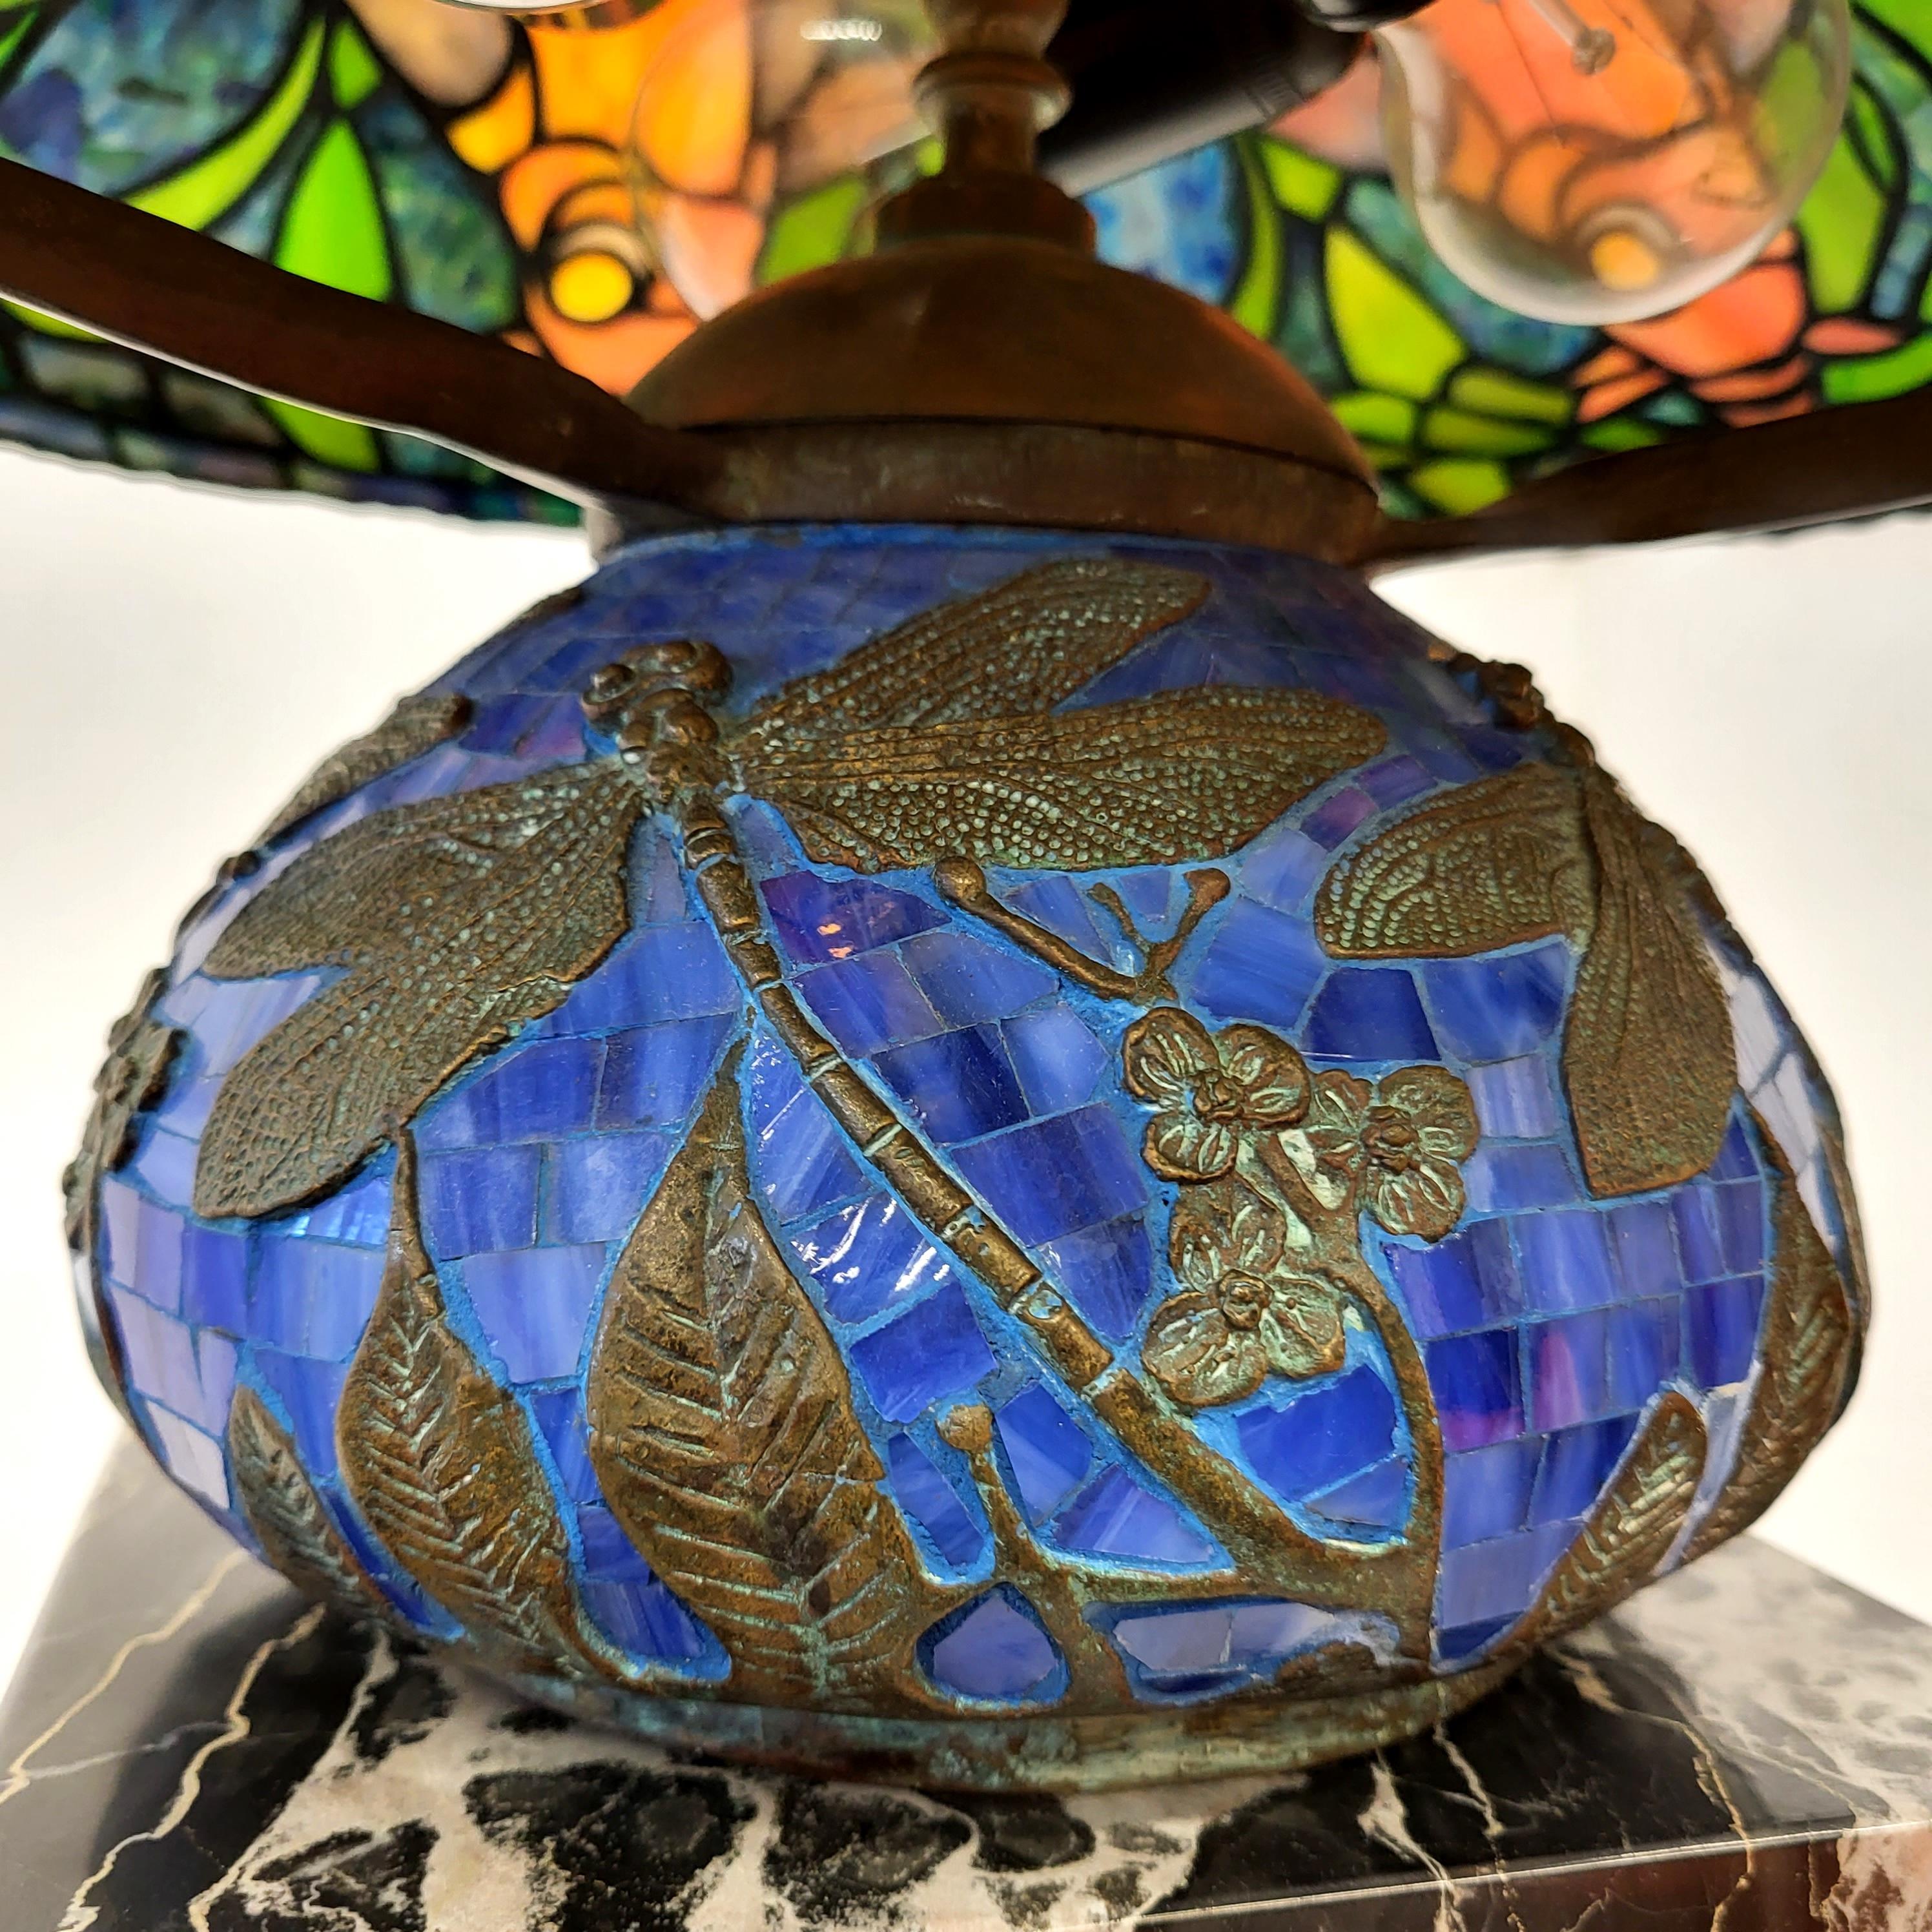 Stupéfiante et étonnante lampe de table à la manière des studios Tiffany. 
Lampe artisanale très impressionnante avec une magnifique base en libelle bleu.
 
Très beau travail à la main, verre coloré. A la manière de la lampe Dragonfly.

La lampe a